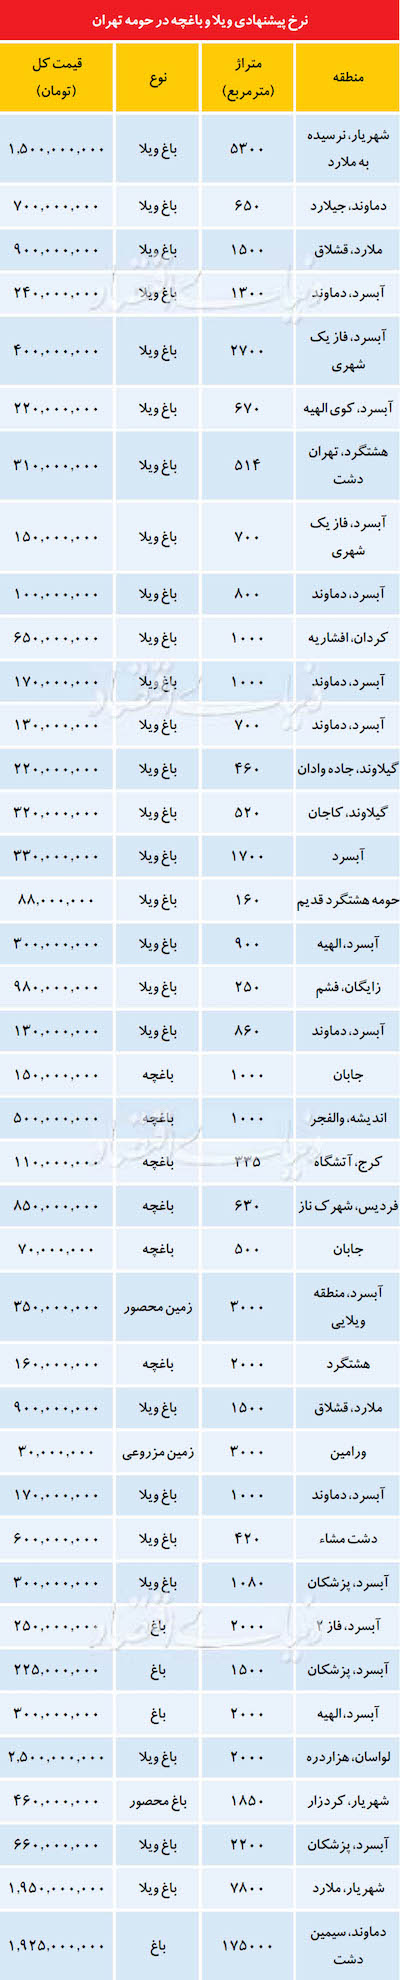 قیمت خانه های ویلایی در اطراف تهران (+جدول)